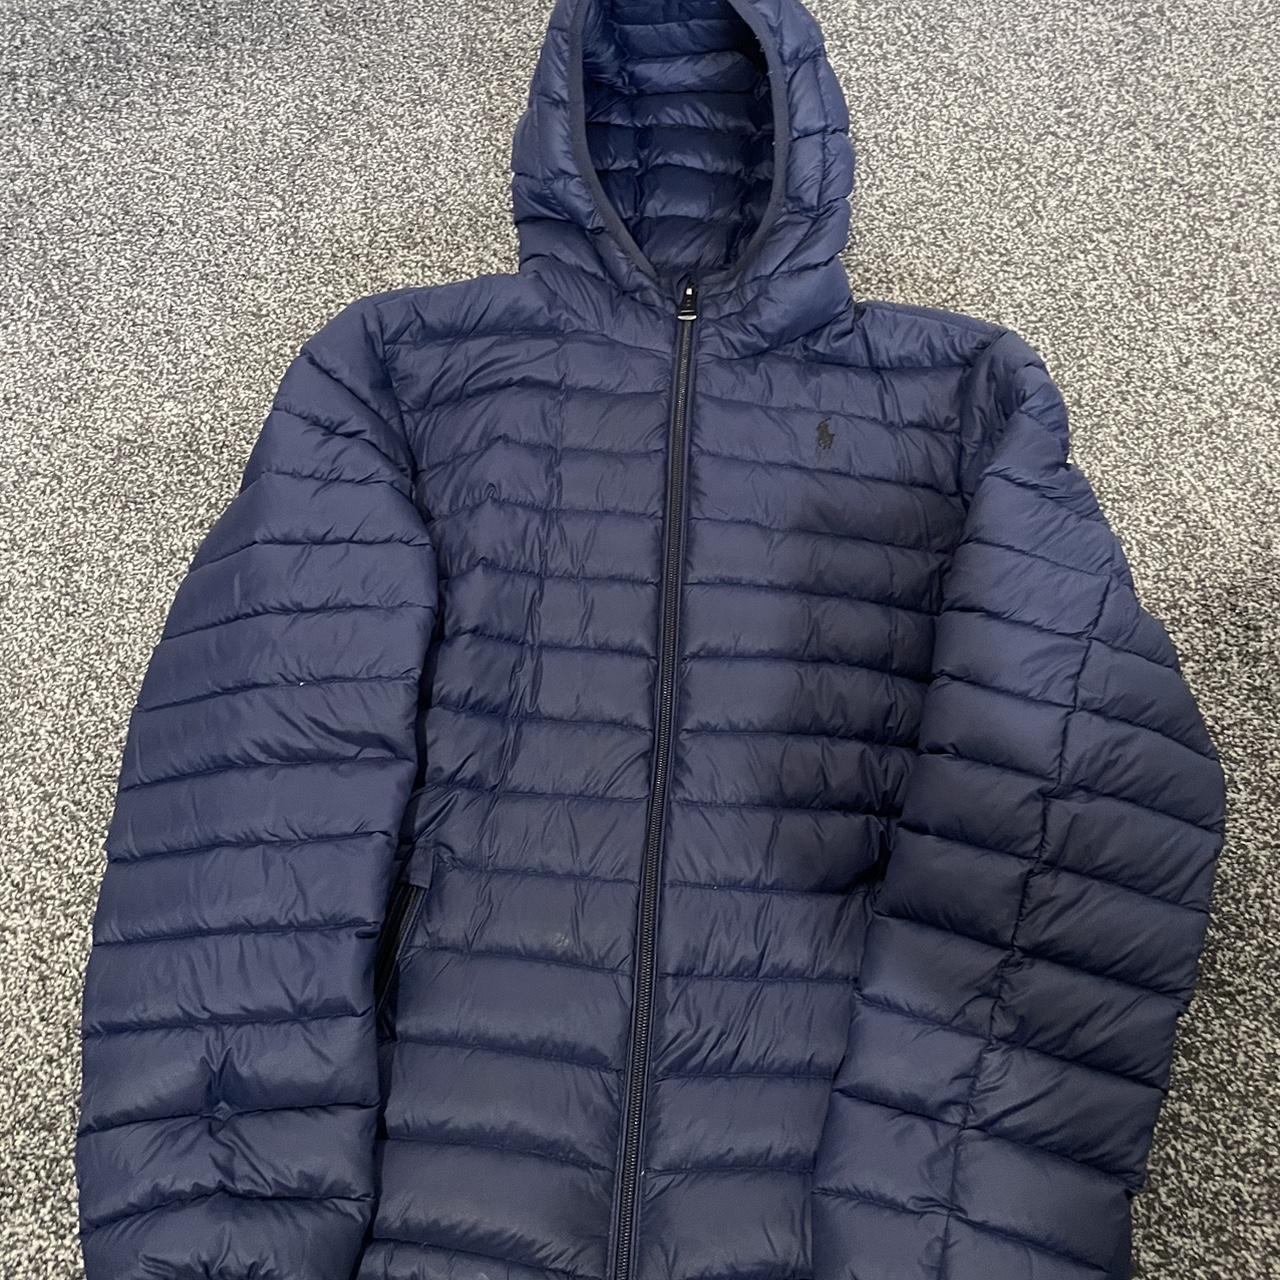 Navy Ralph Lauren puffer jacket. Size- XL... - Depop